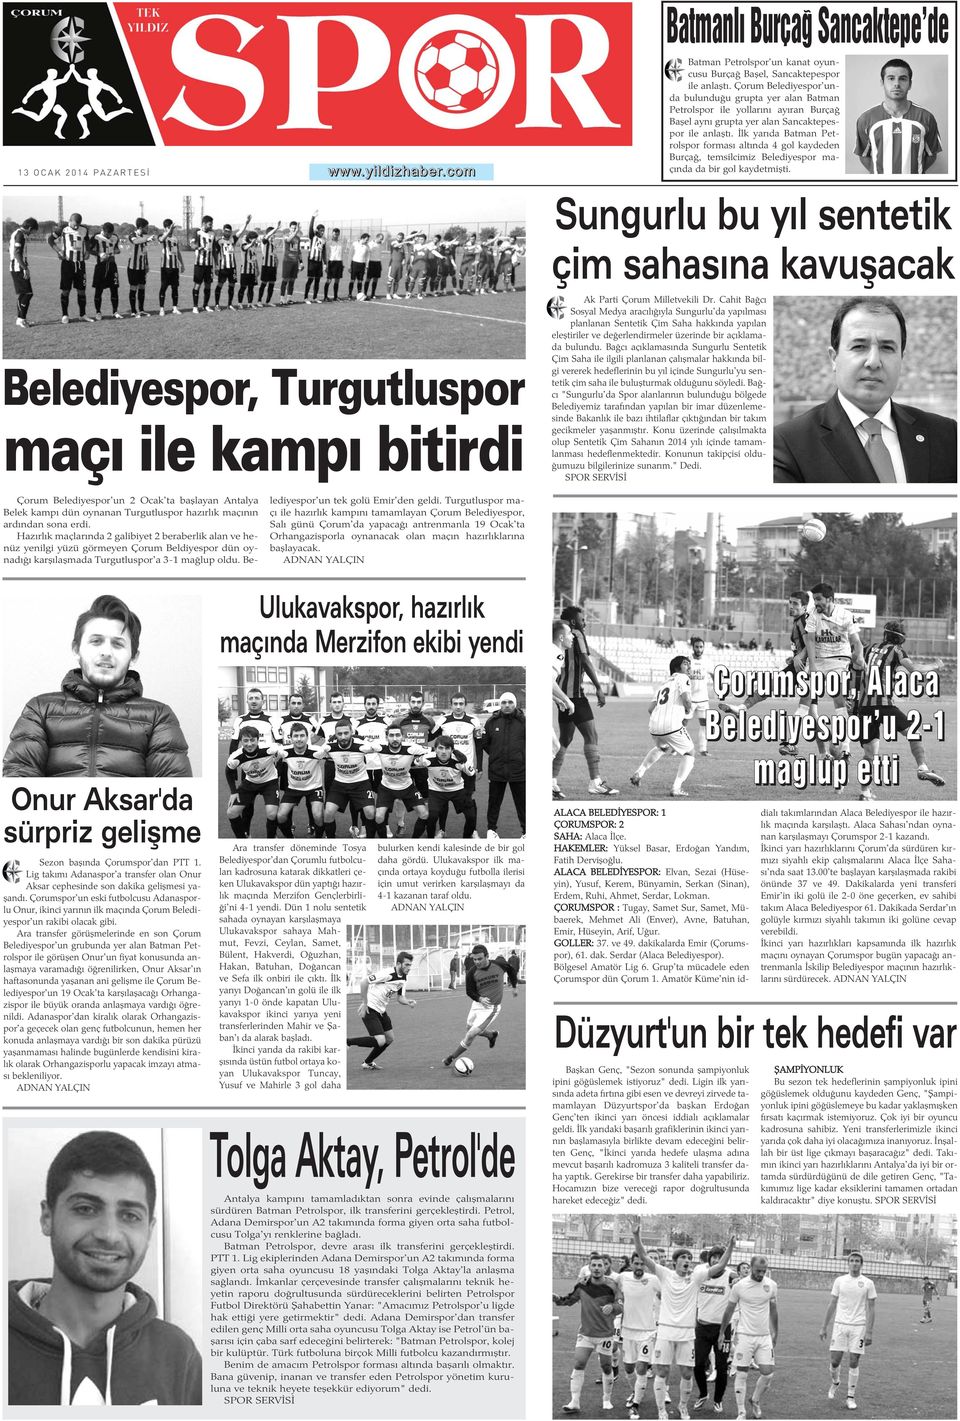 Ýlk yarýda Batman Petrolspor formasý altýnda 4 gol kaydeden Burçað, temsilcimiz Belediyespor maçýnda da bir gol kaydetmiþti.